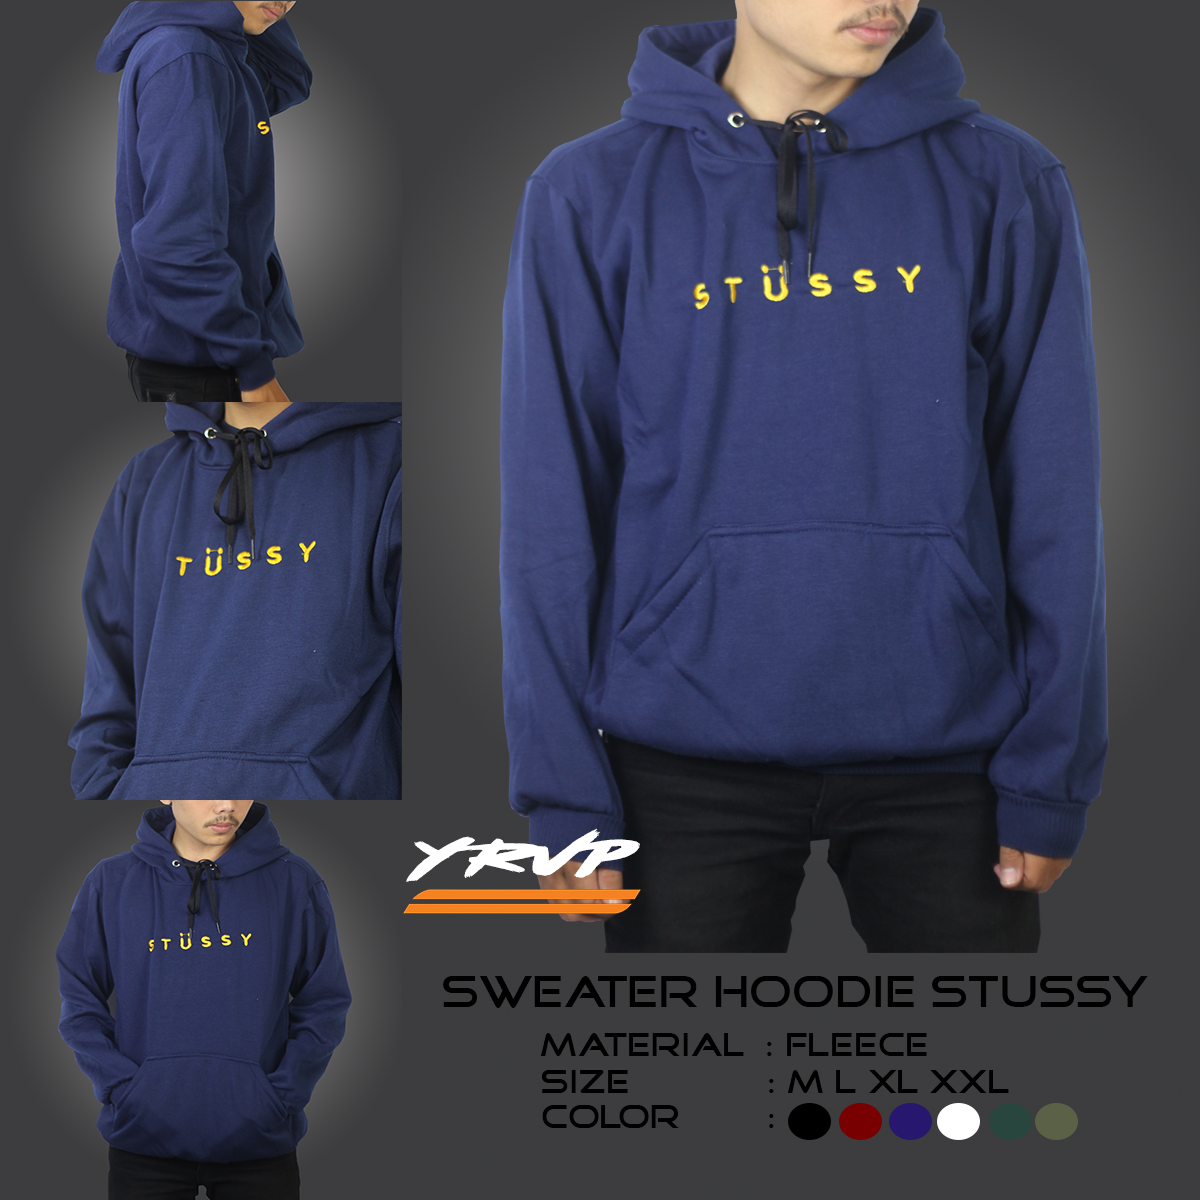 stussy hoodie xxl